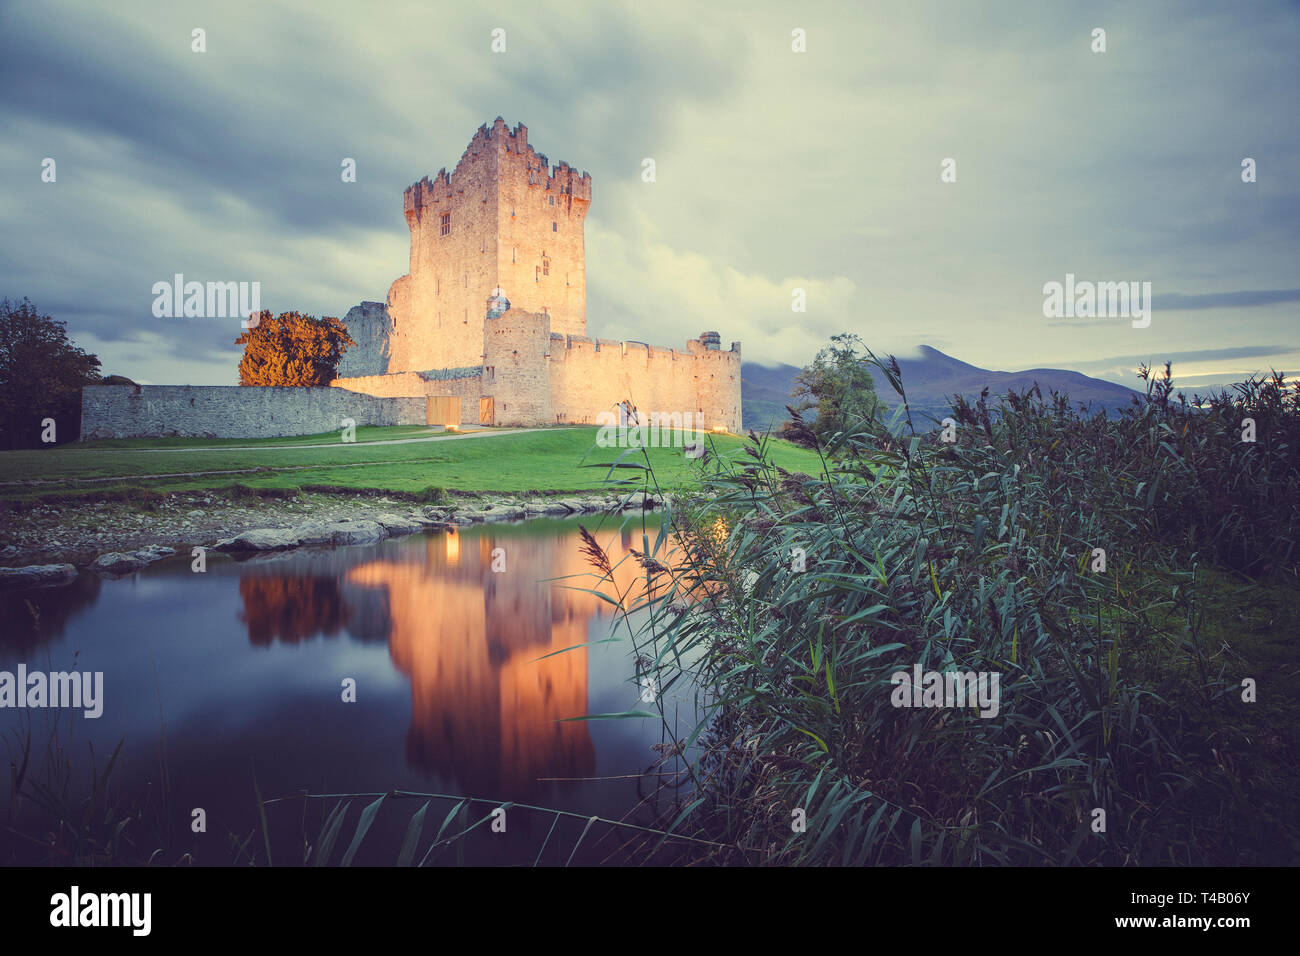 Ross Castle and reflection, Killarney, County Kerry, Ireland Stock Photo